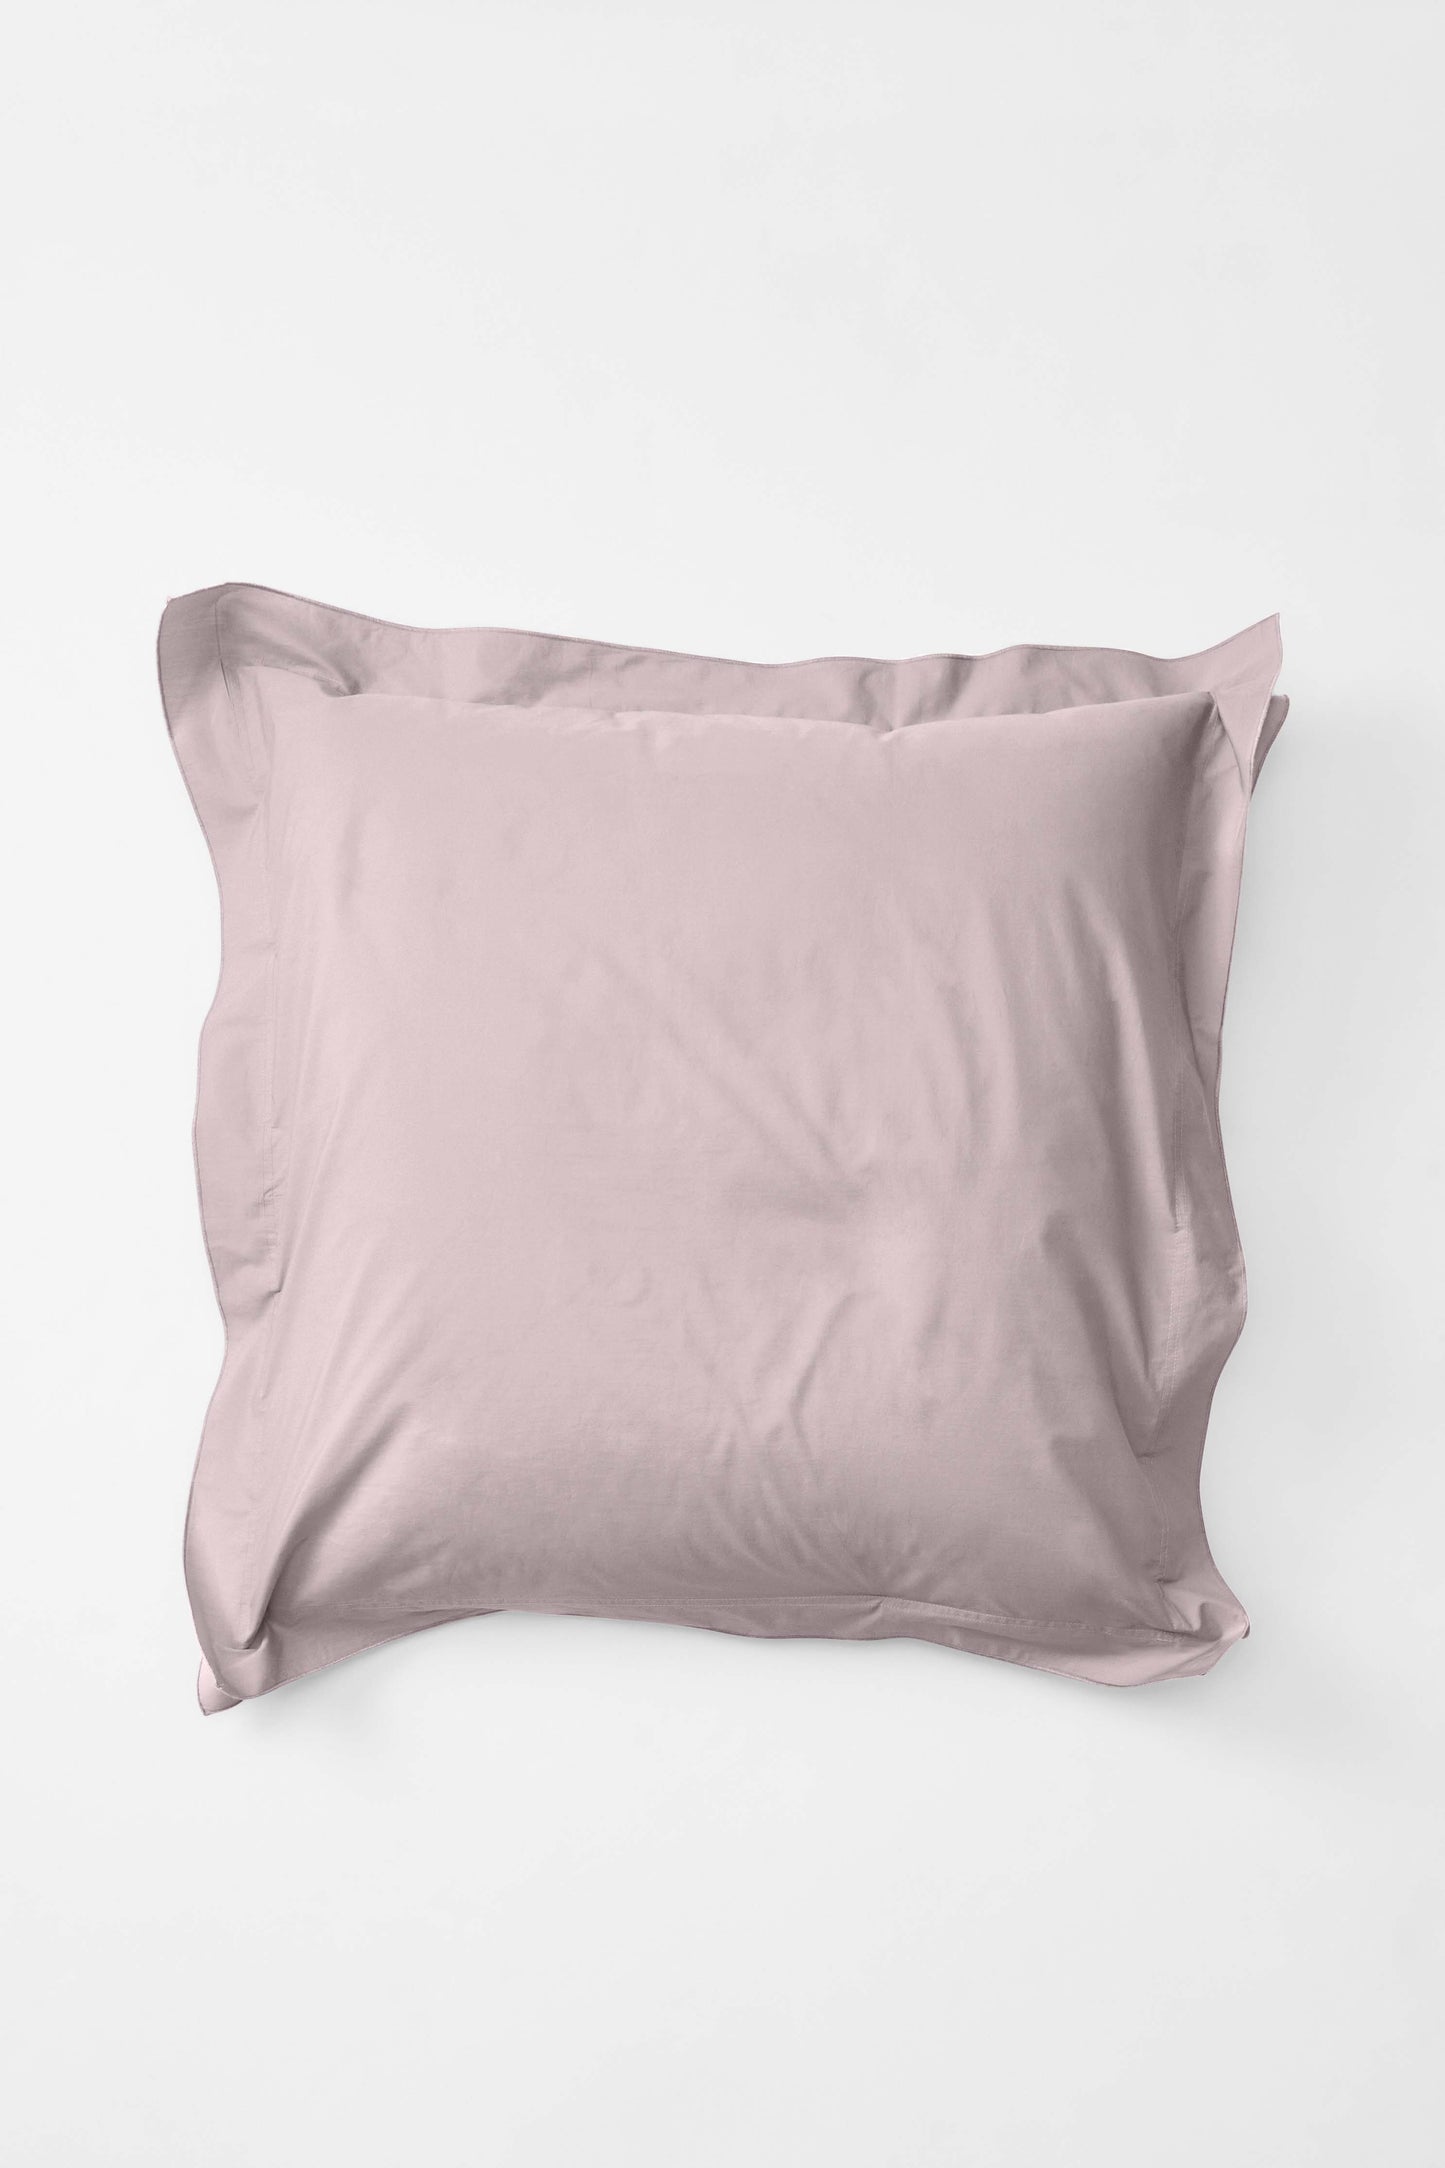 Euro Pillowcase Pair in Lilac